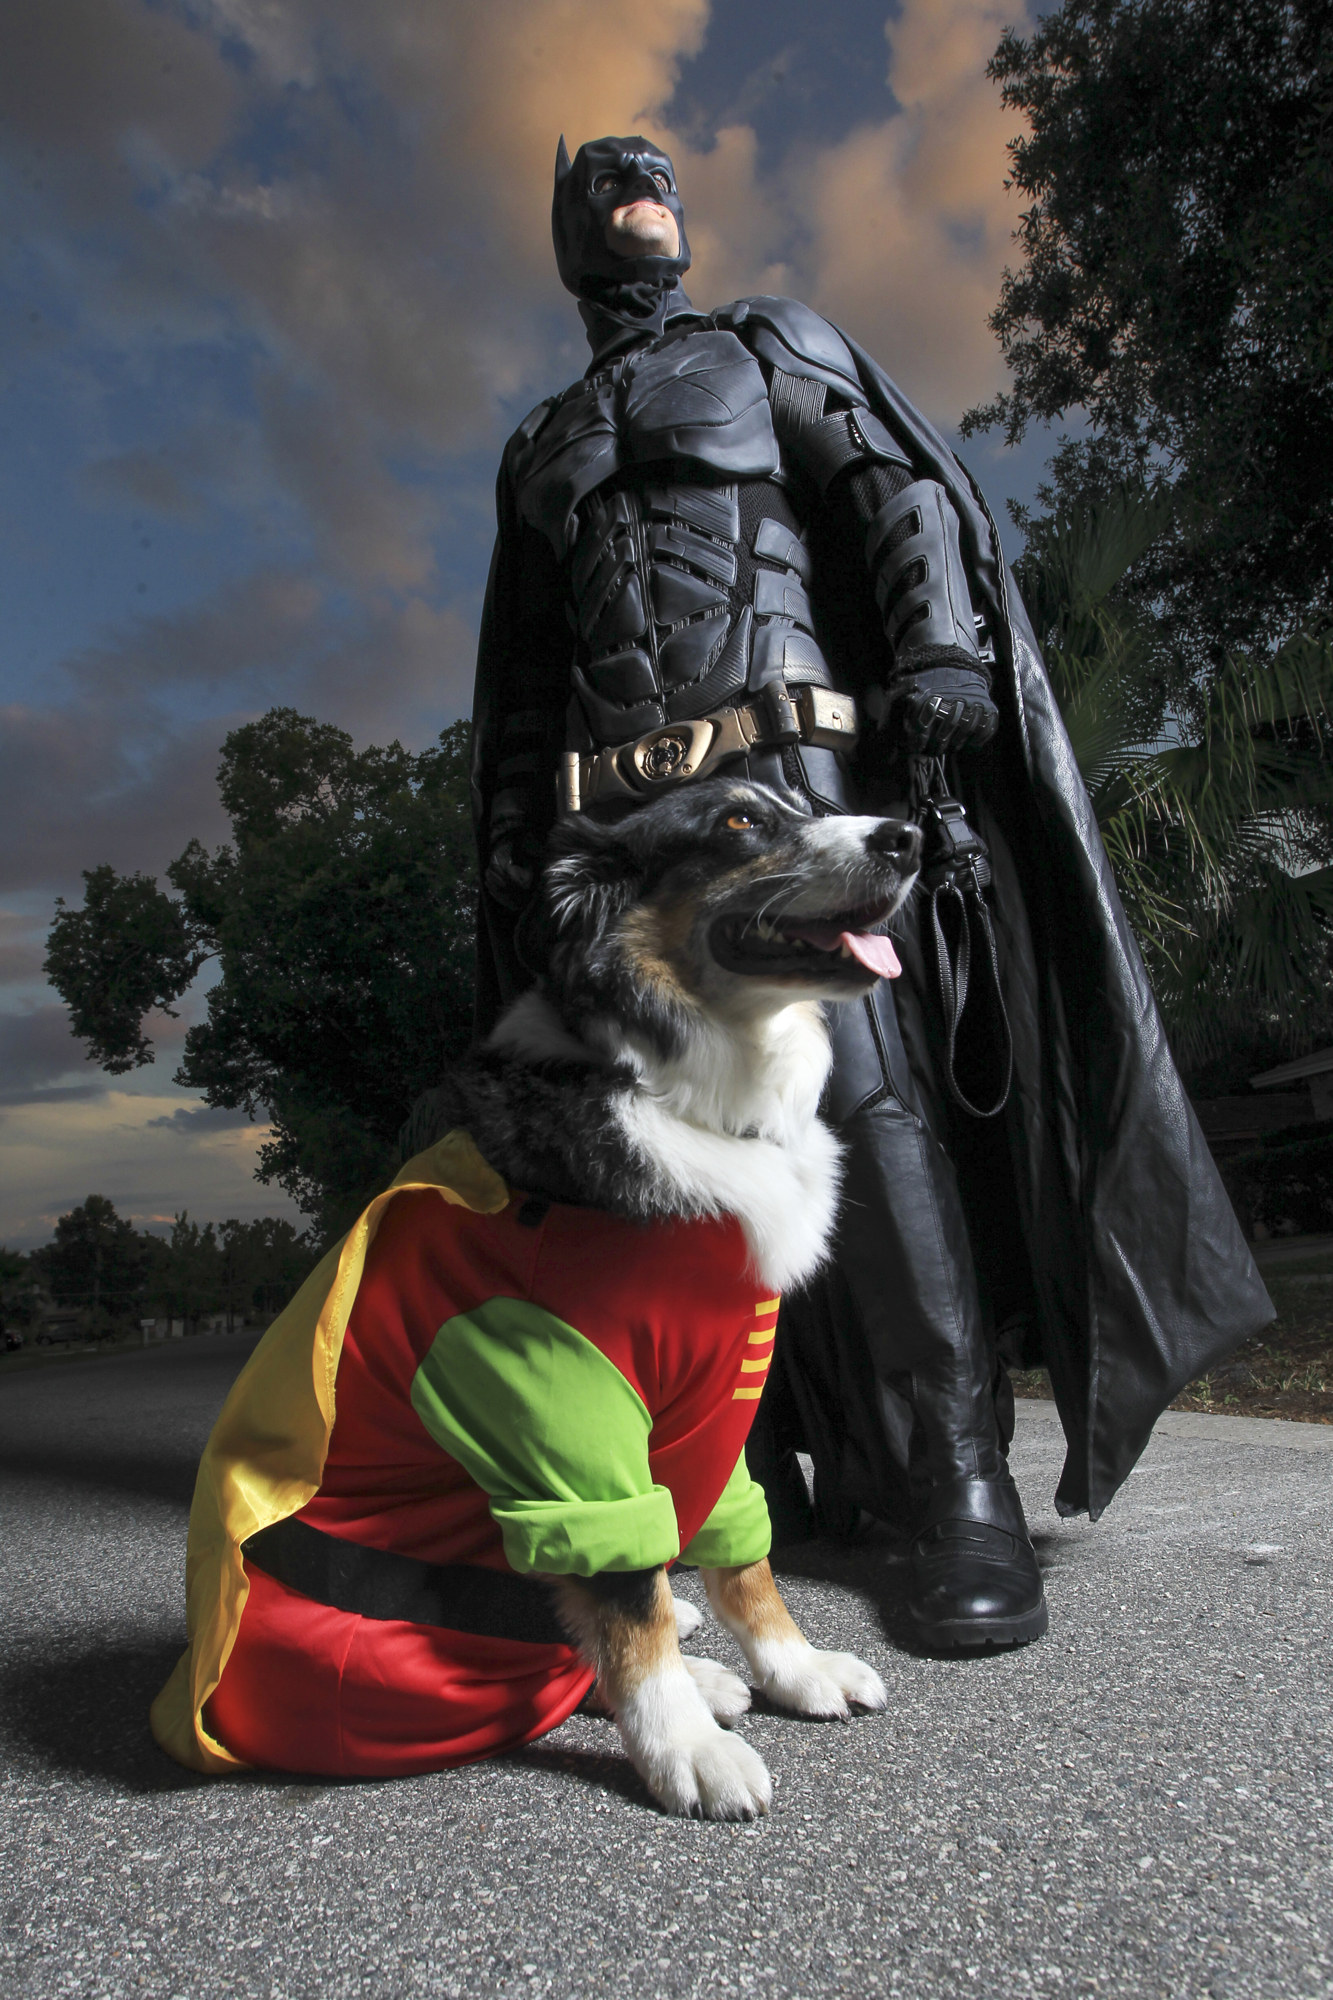 Chris Van Dorn transforms into Batman, and his dog, Mr. Boots, becomes Robin.